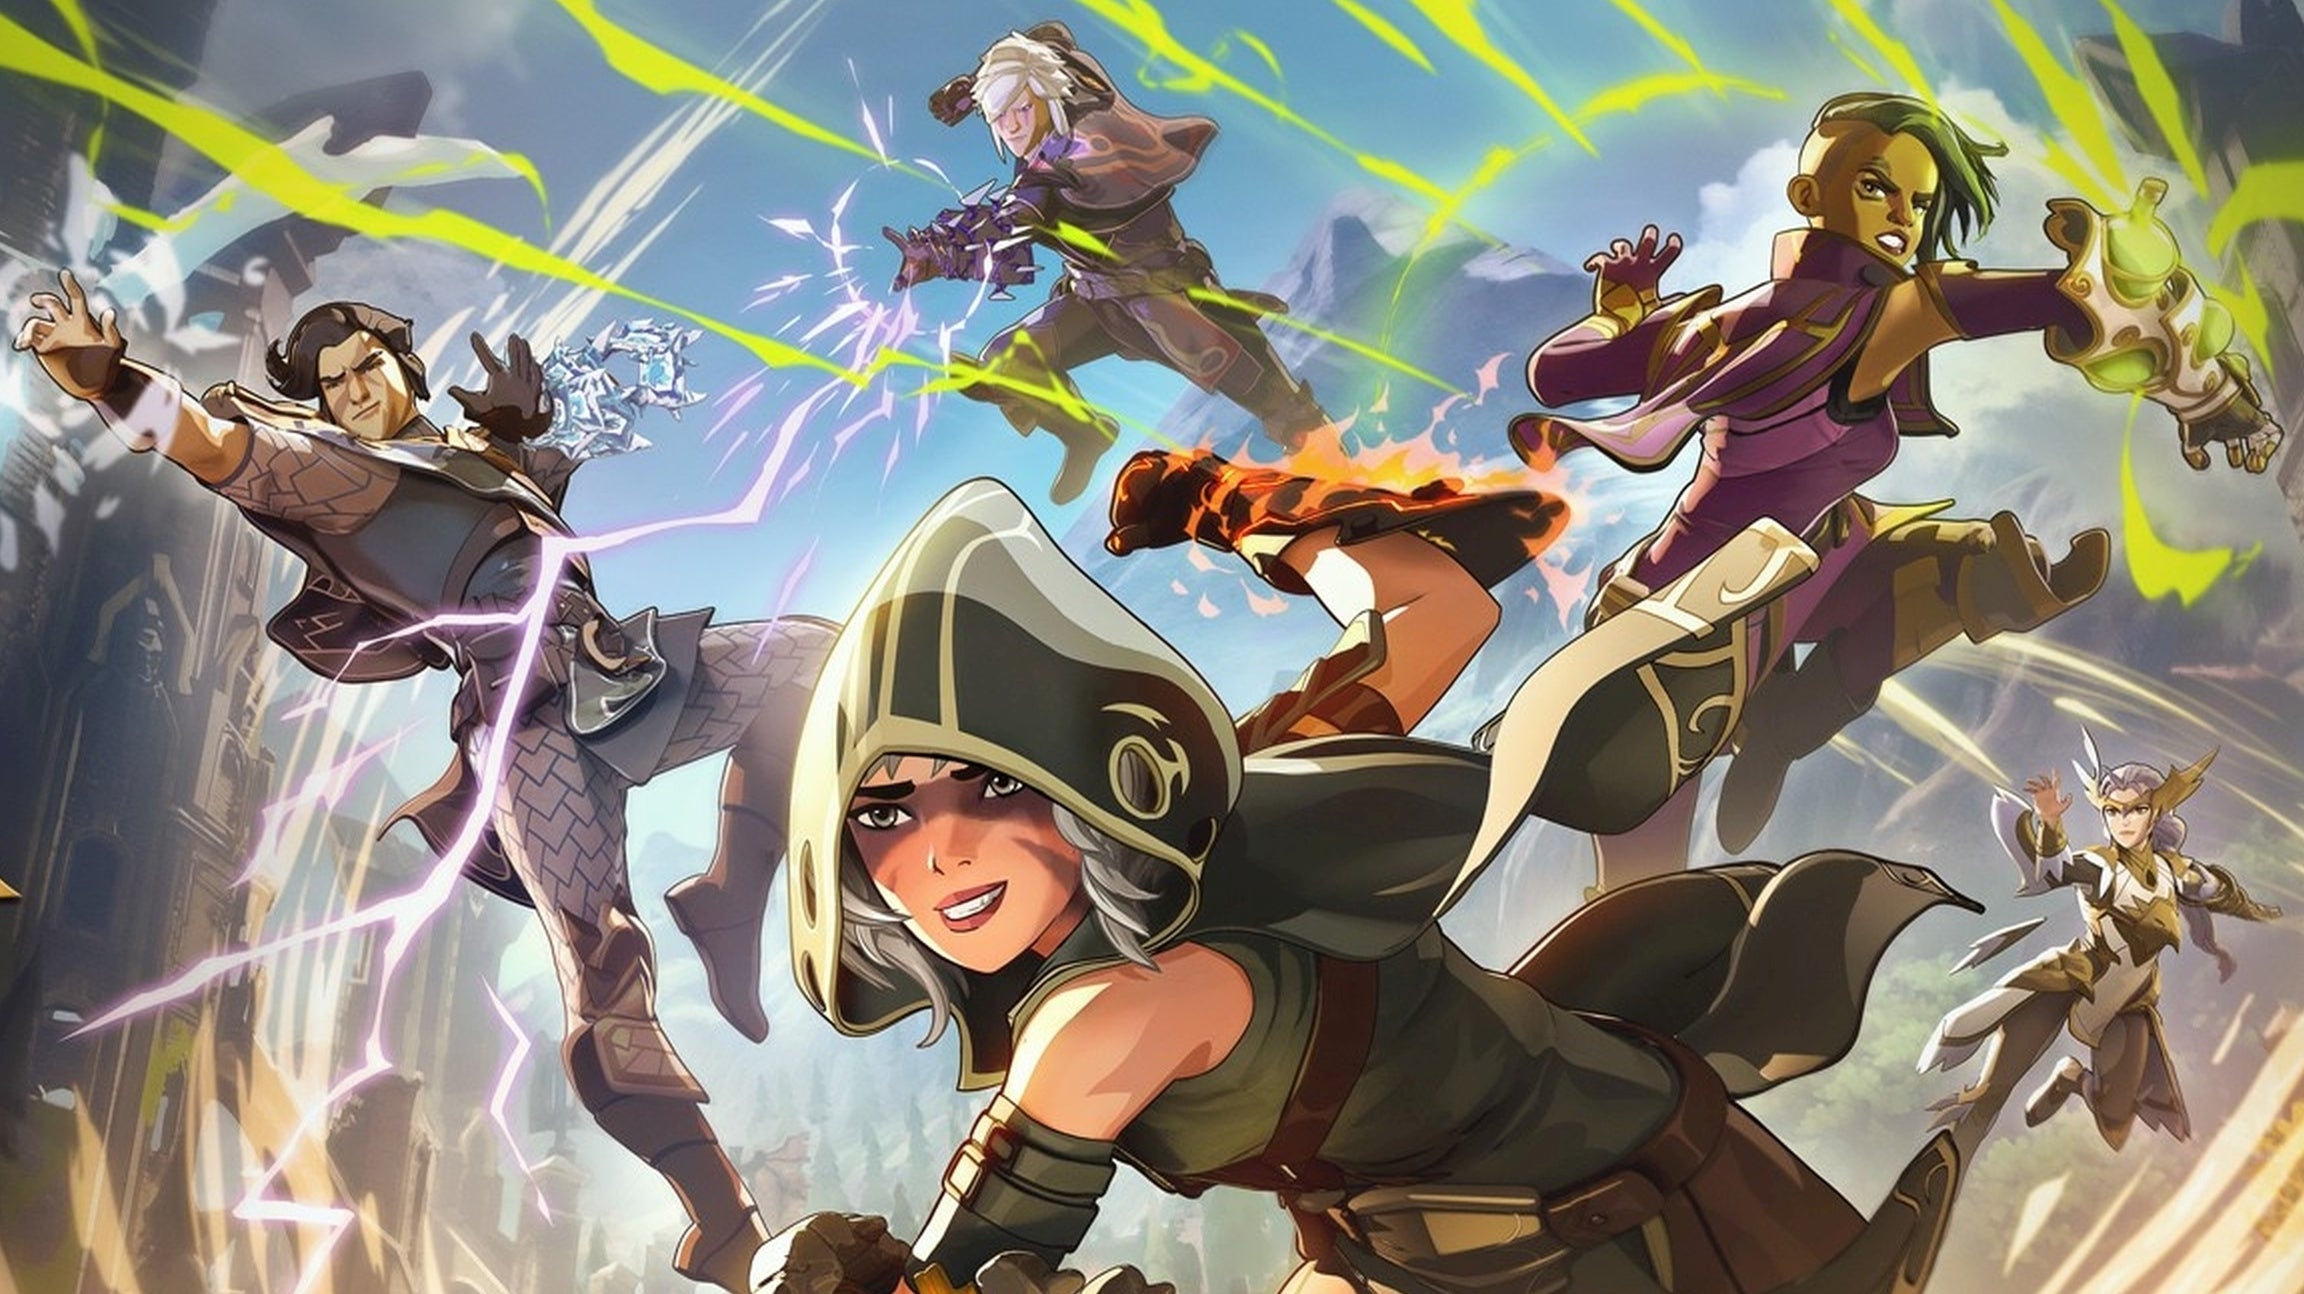 Bilder zu Spellbreak ist Battle Royale für RPG-Geeks: So mächtig haben sich Magier selten angefühlt!